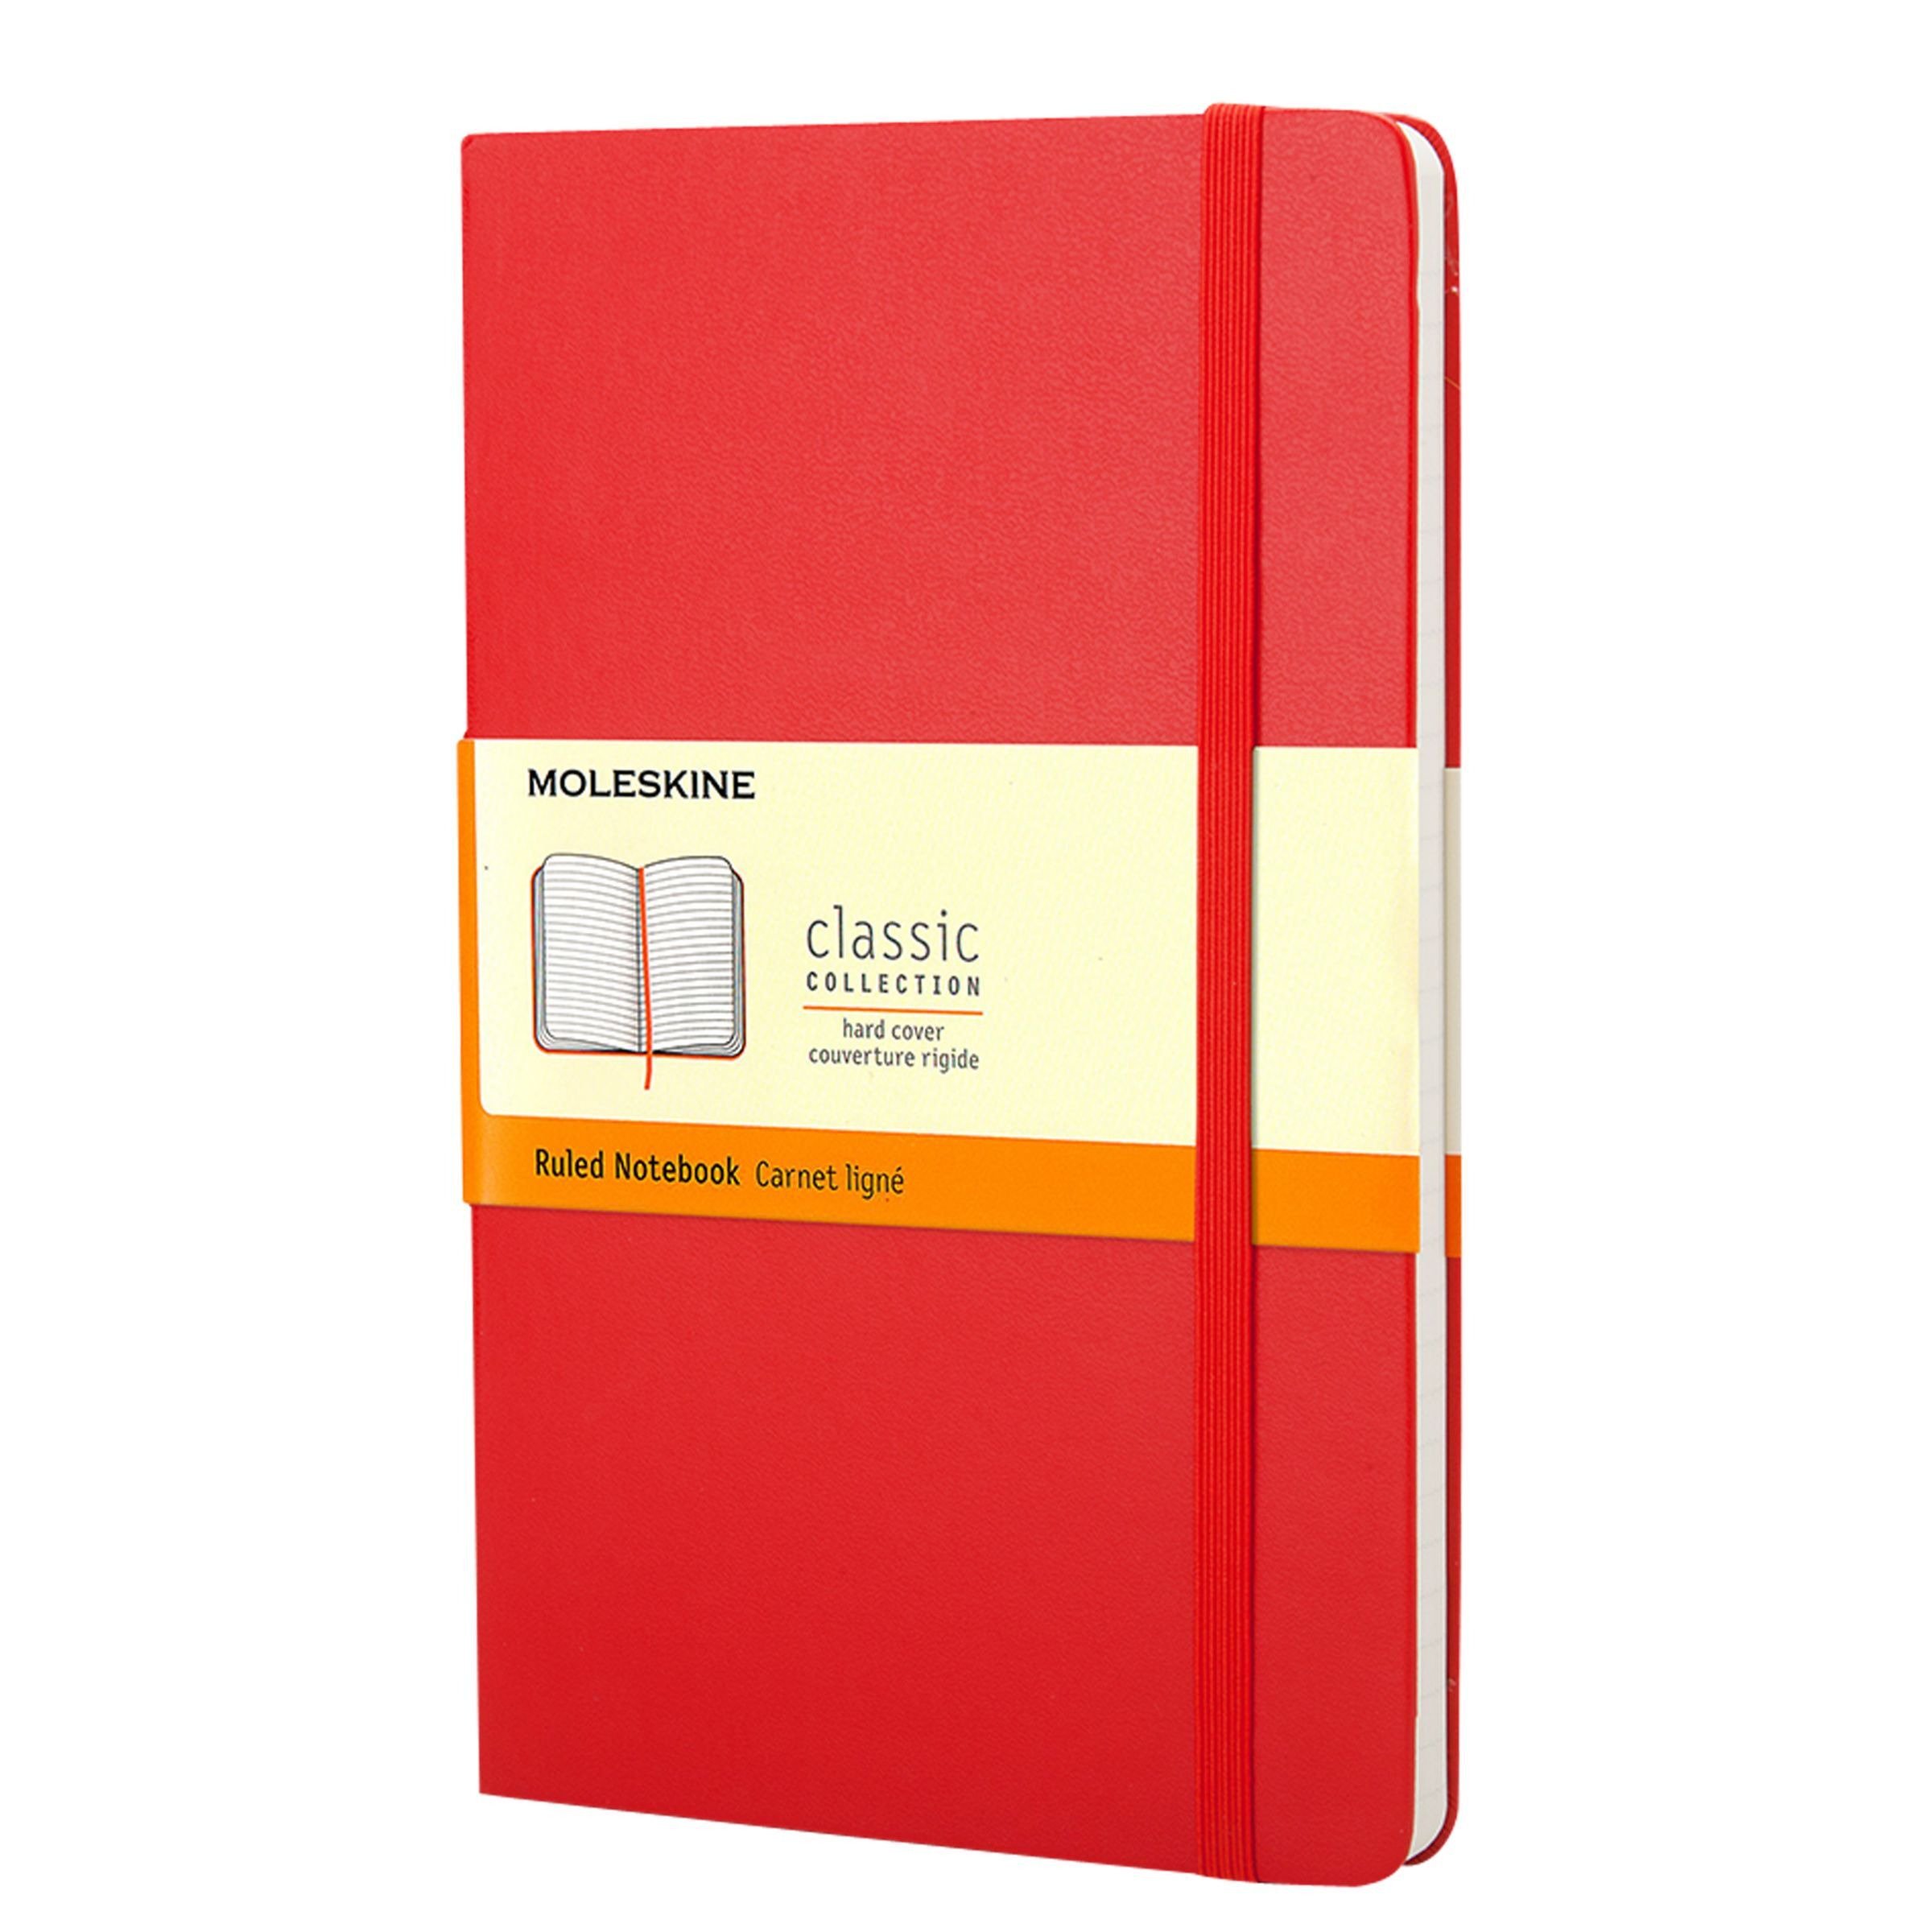 Moleskine Large Hard Cover Ruled Notebook - image 1